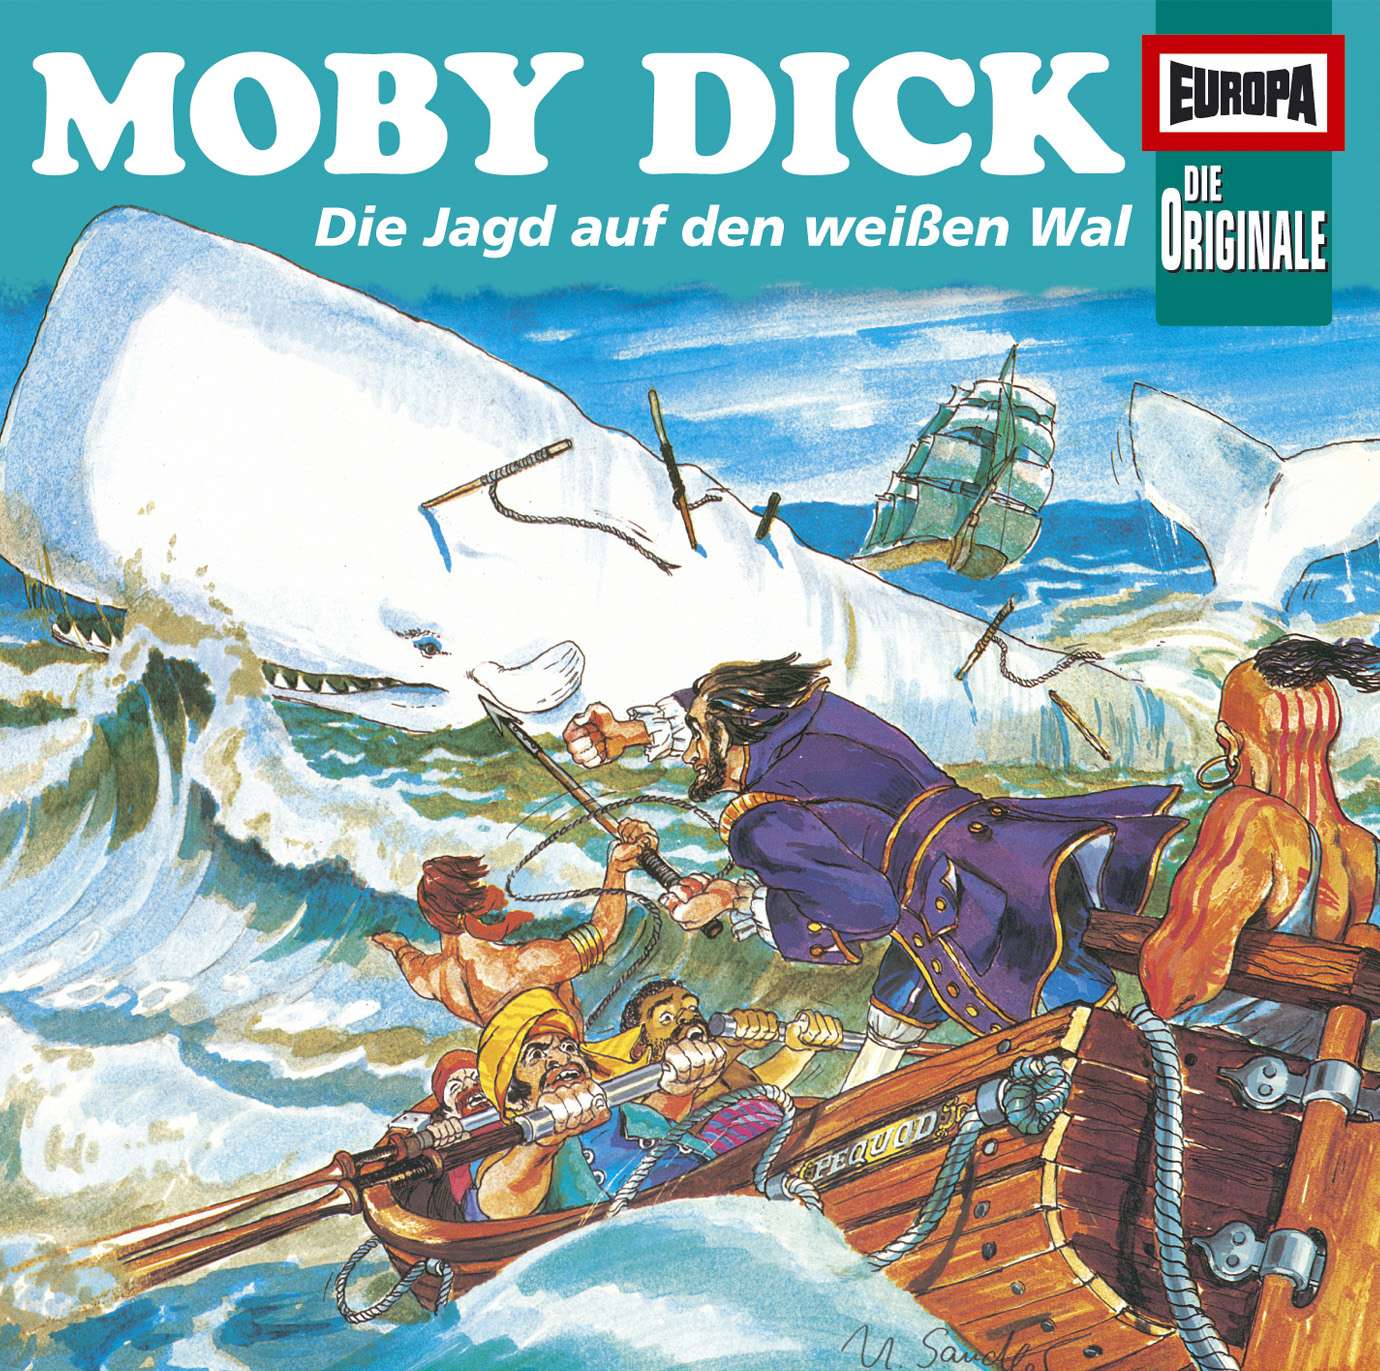  Die Originale - Moby Dick